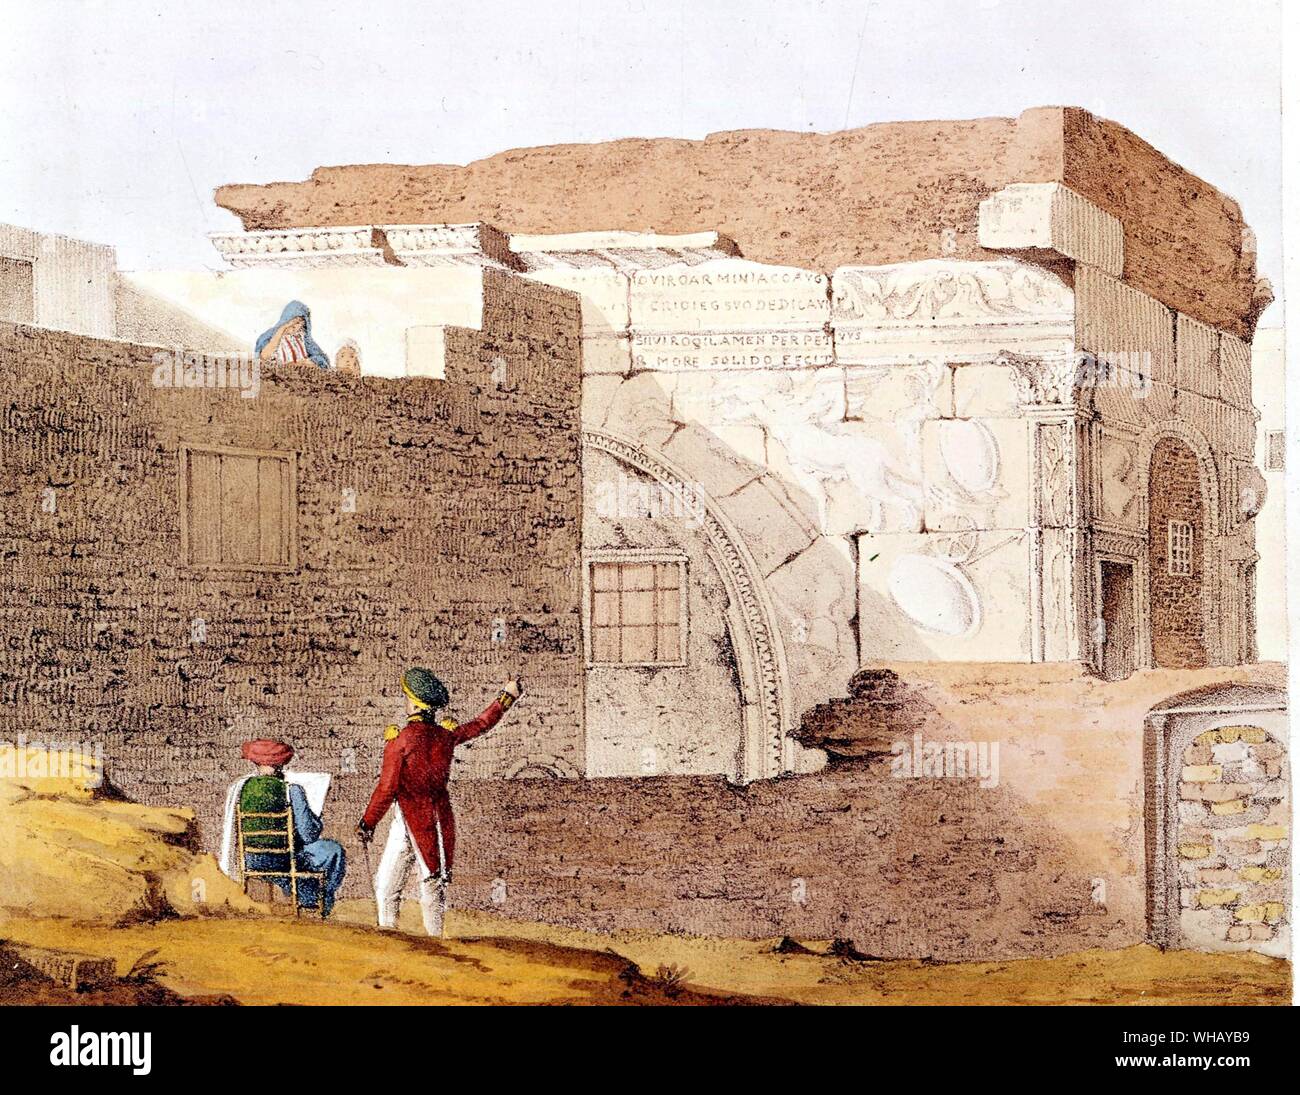 Skizzieren Ruinen in Tripolis, die von der patriotischen G. F. Lyon, sang "Rule Britannia", wie er von seinen Erkundungen außerhalb der Stadt zurück. Die African Adventure - eine Geschichte von Afrikas Entdecker von Timothy Severin, Seite 112. Stockfoto